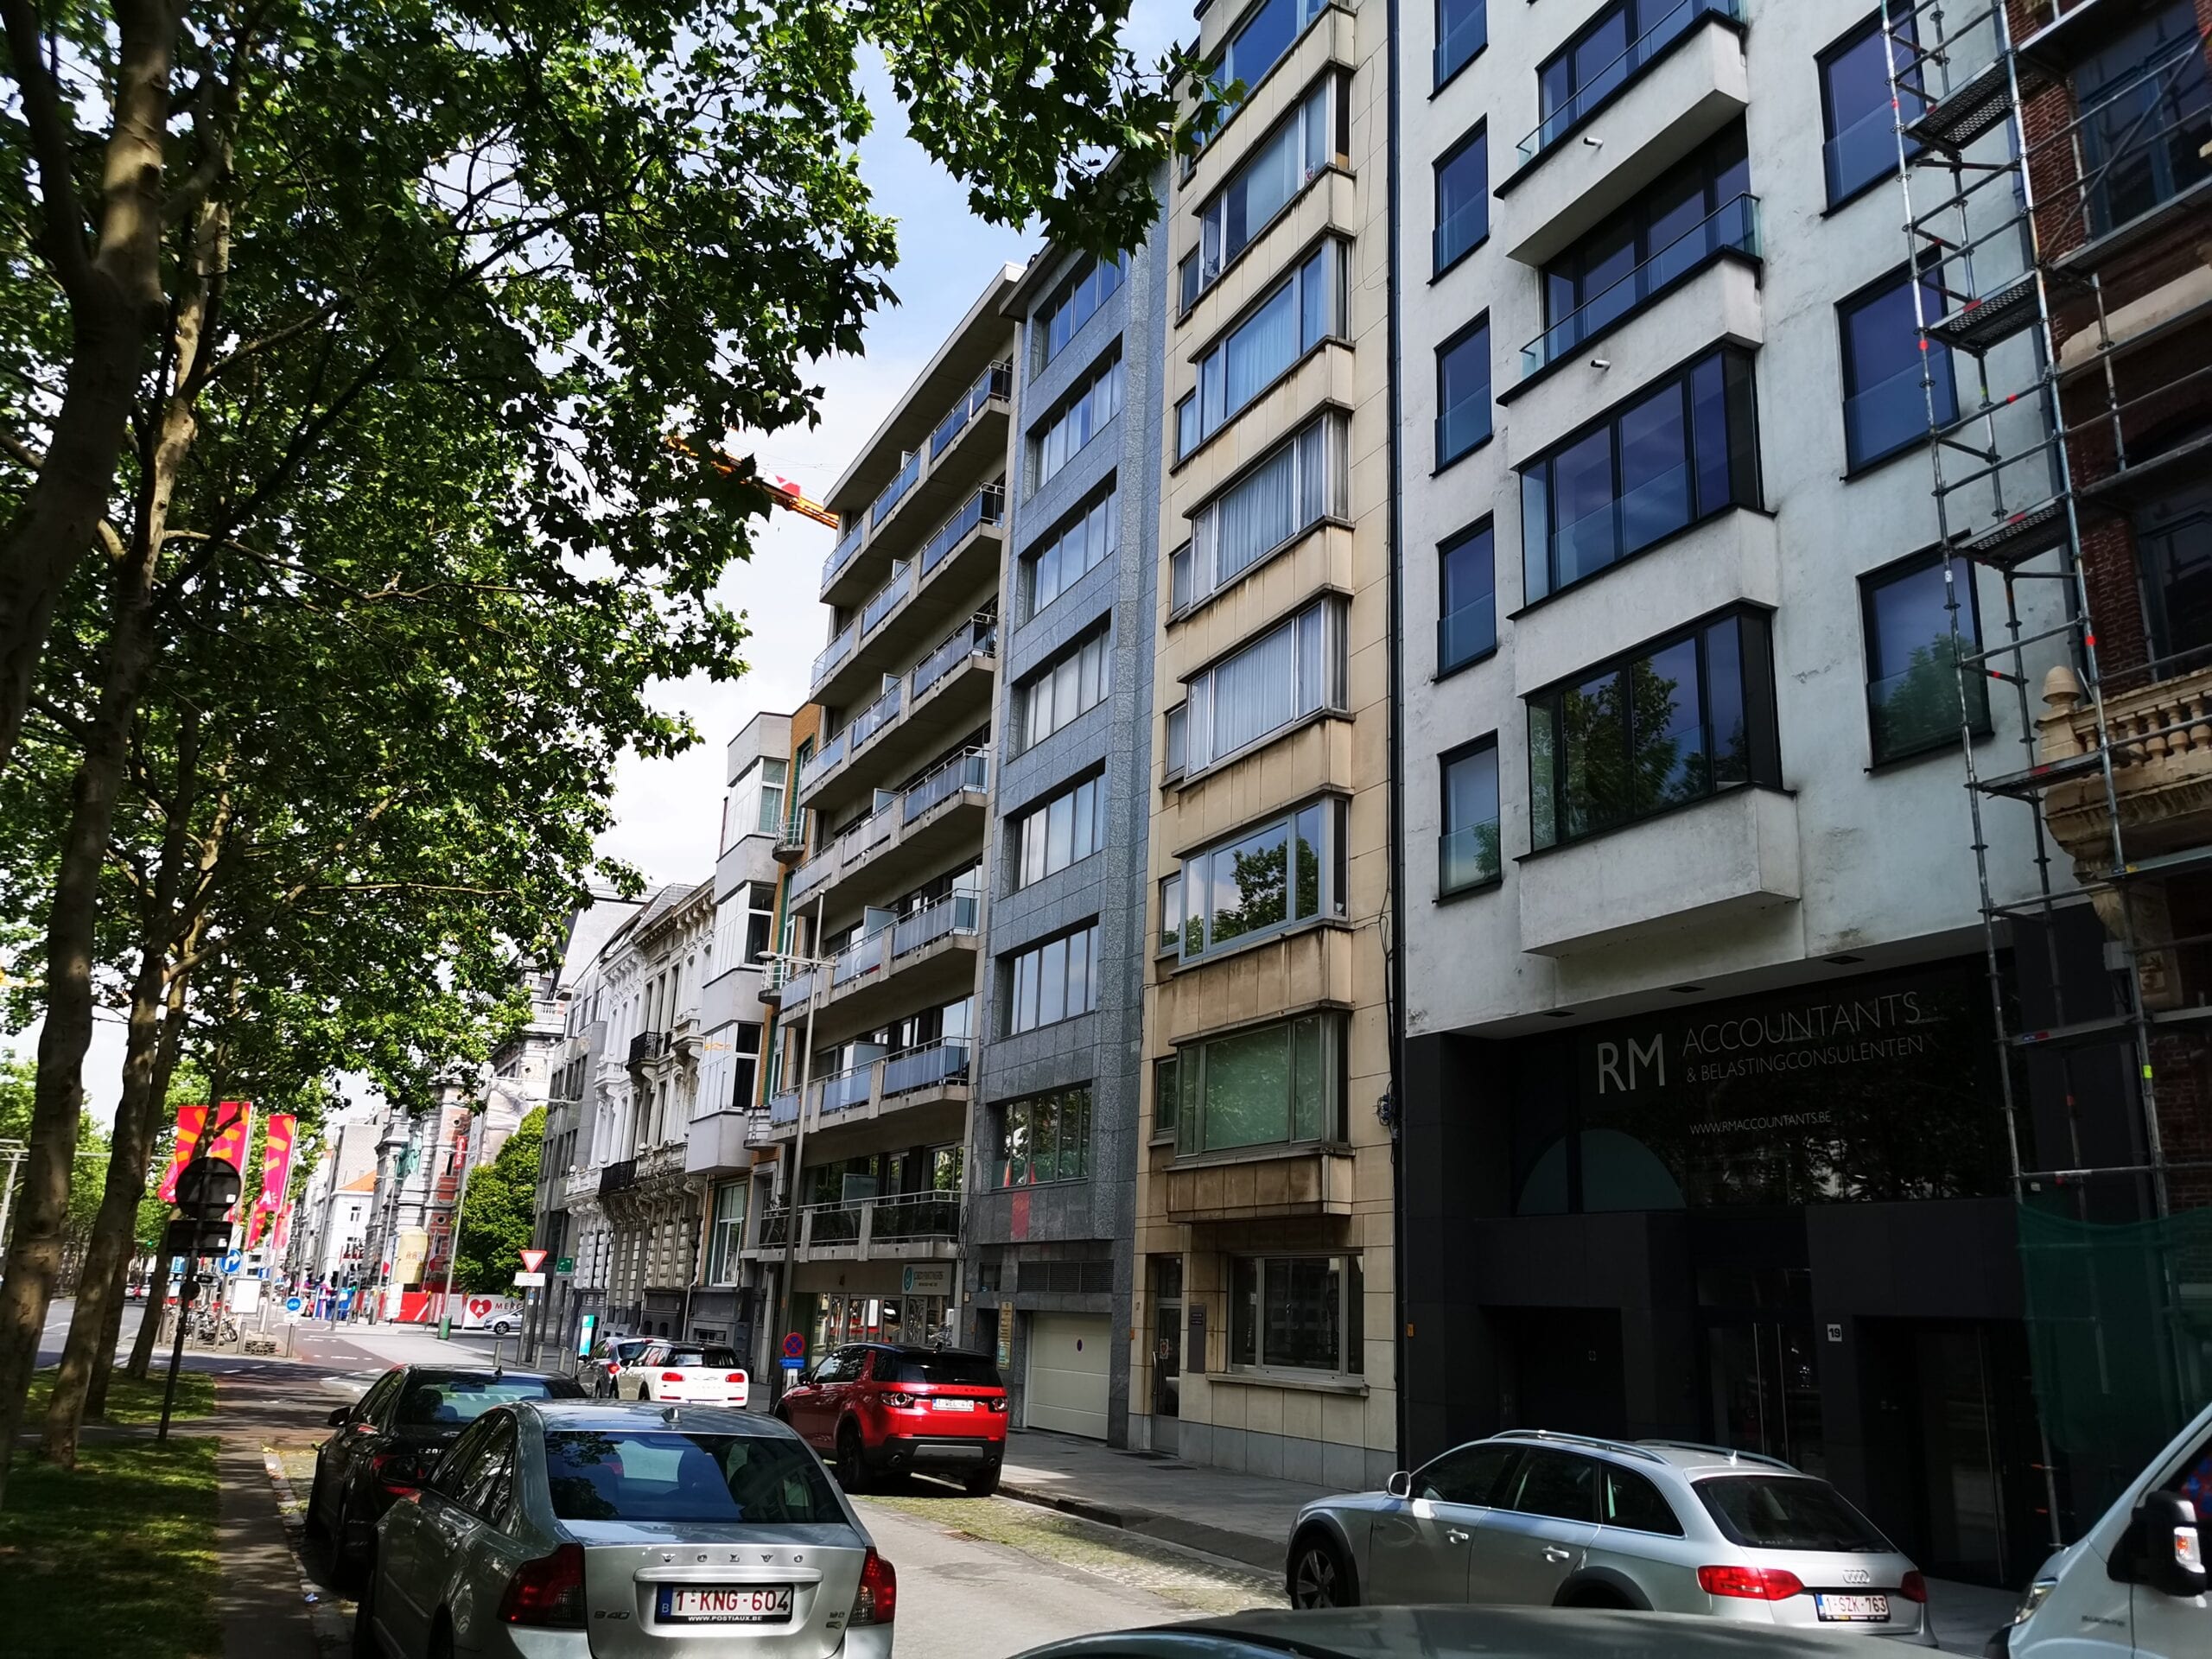 Schatting, appartement, Amerikalei-Antwerpen